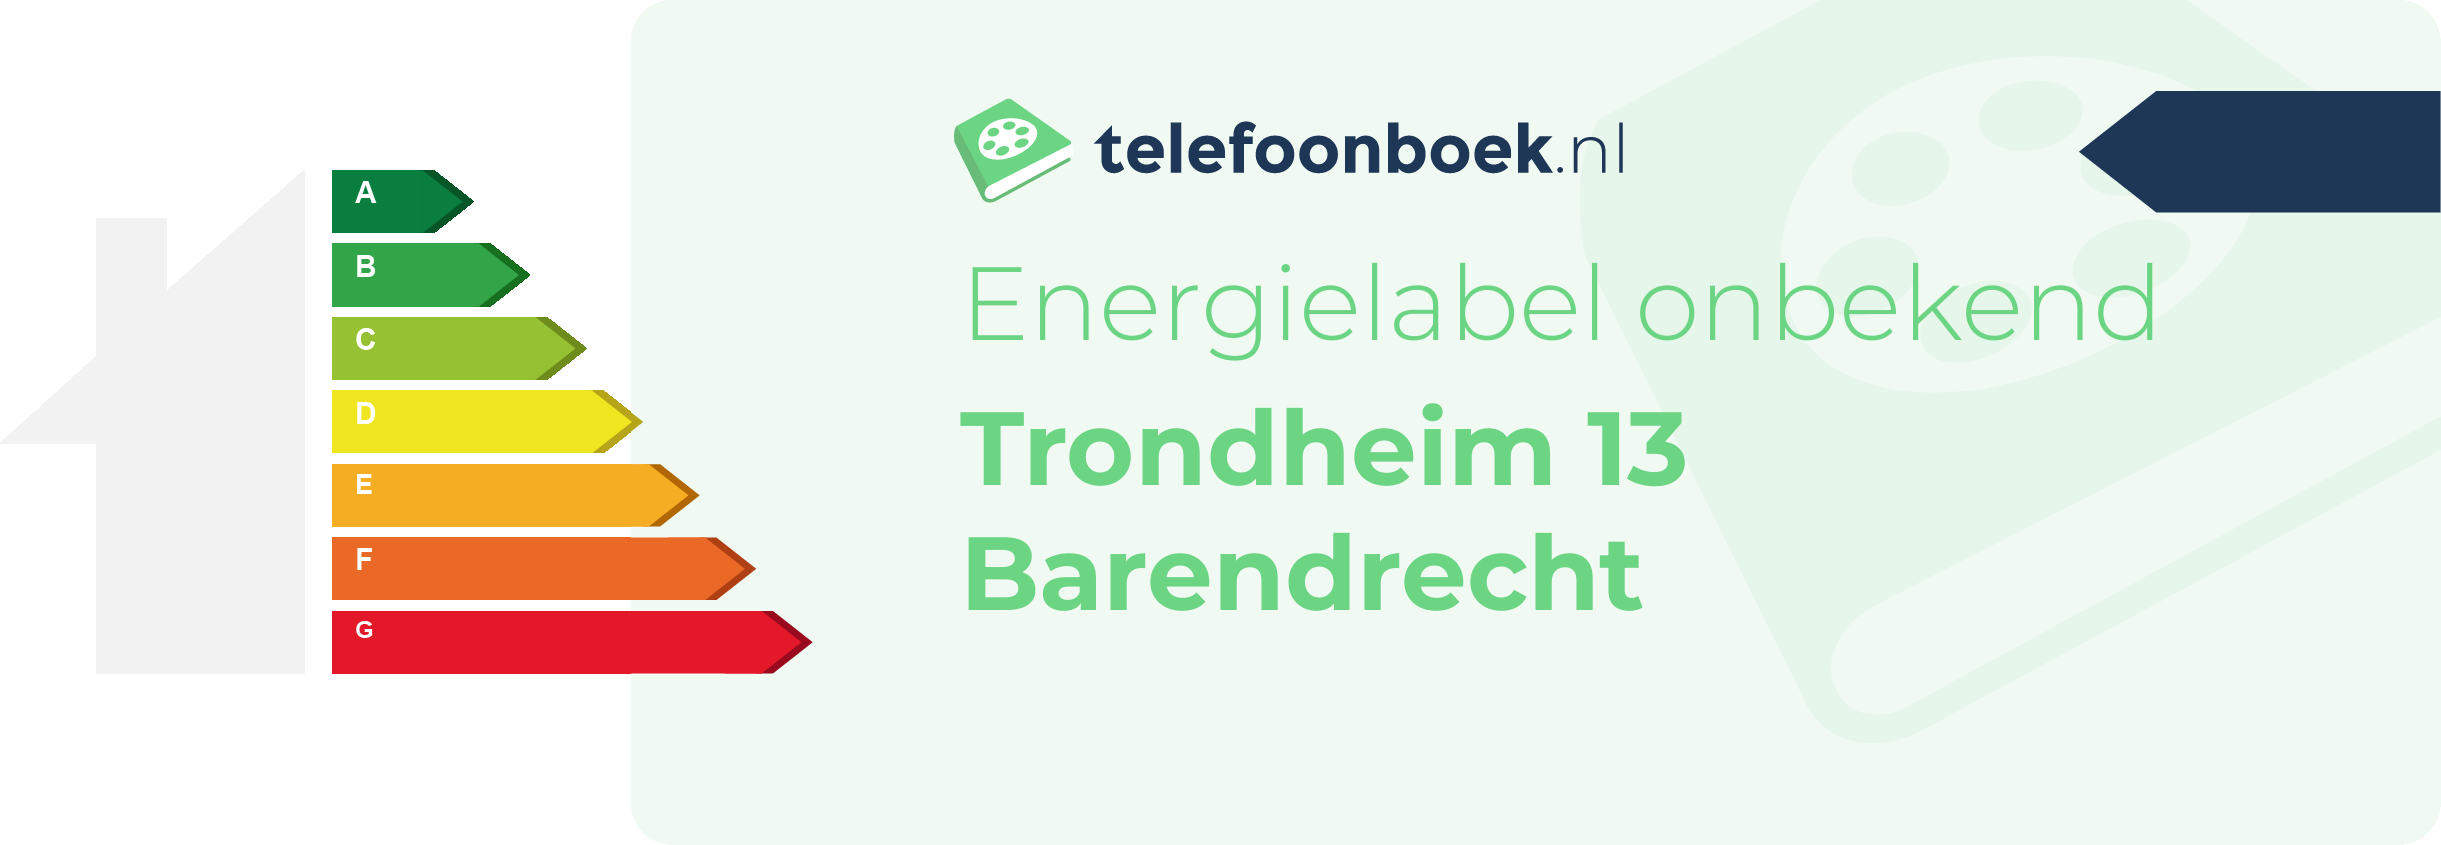 Energielabel Trondheim 13 Barendrecht